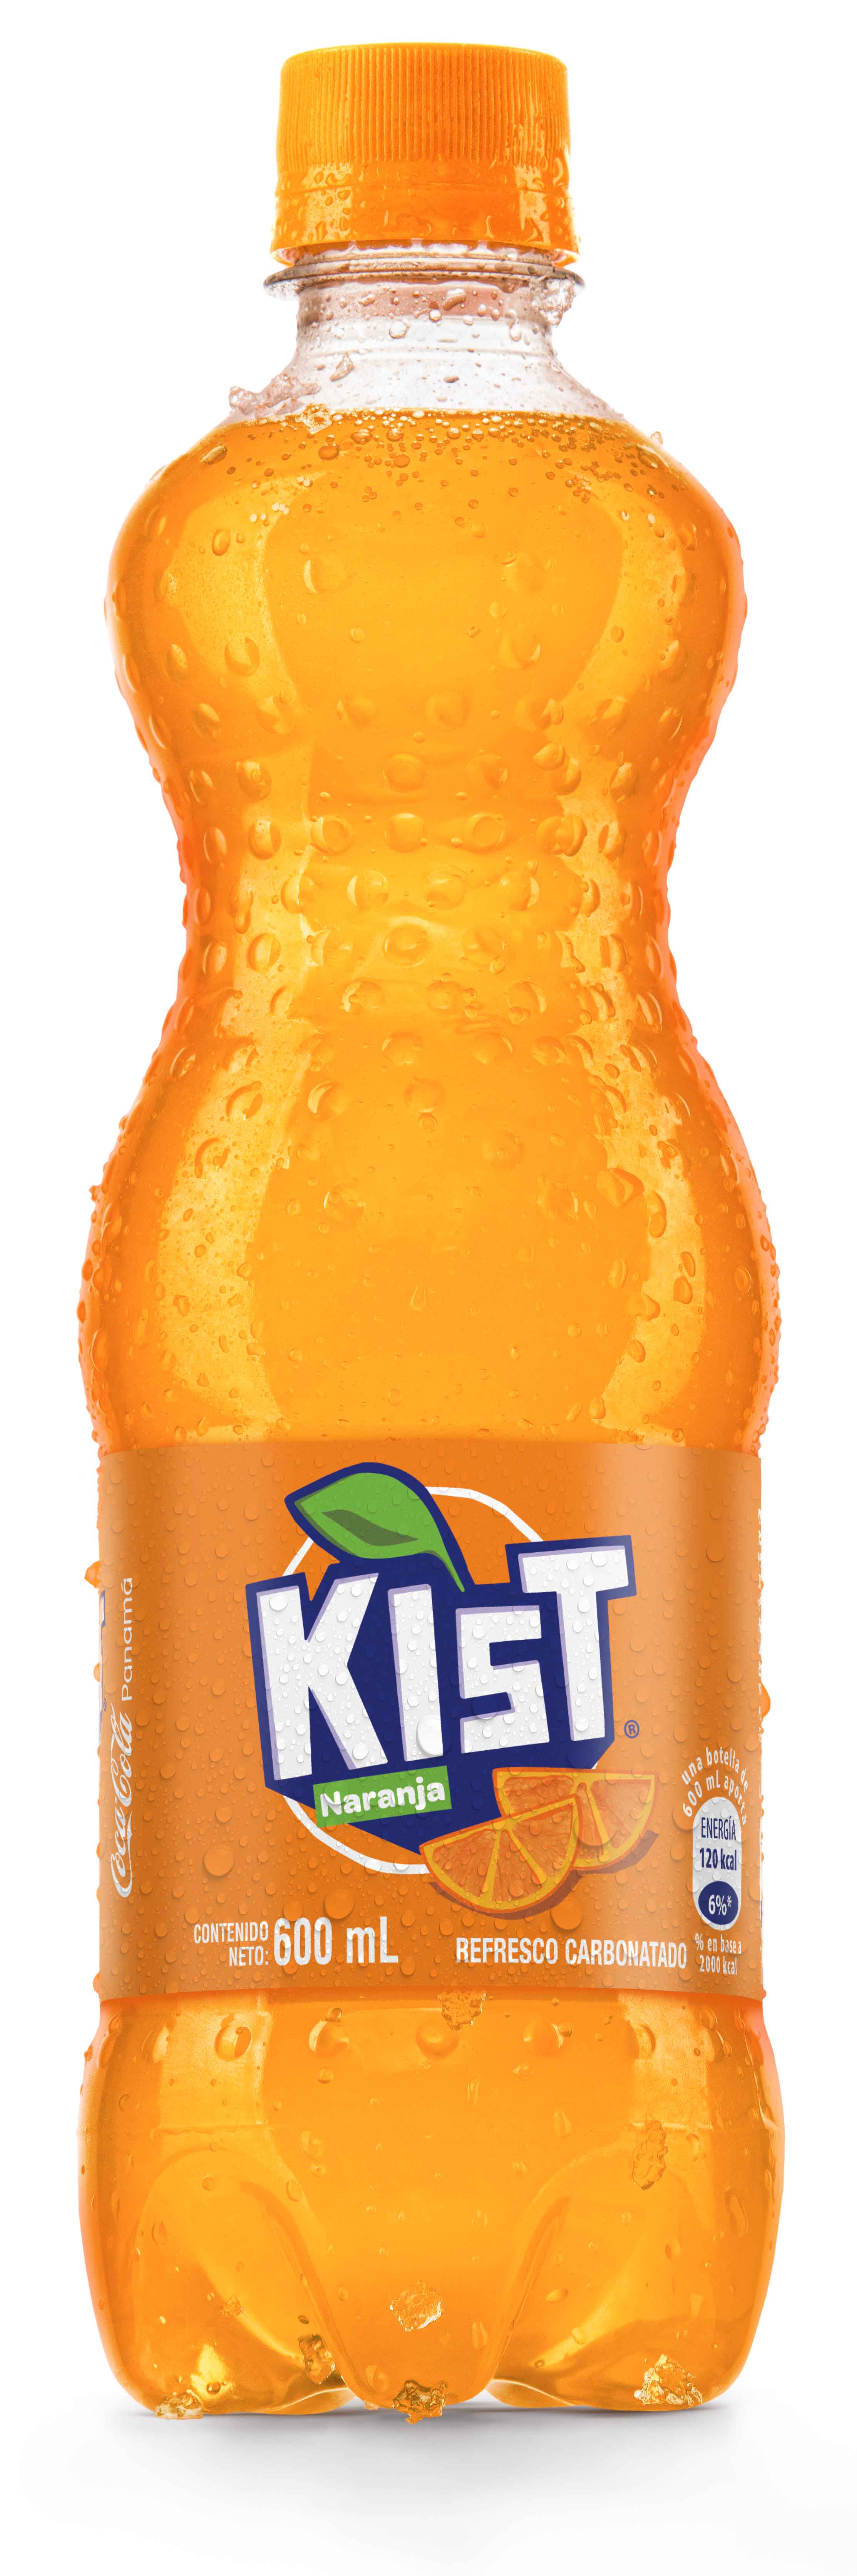 Botella de Kist Naranja by Fanta